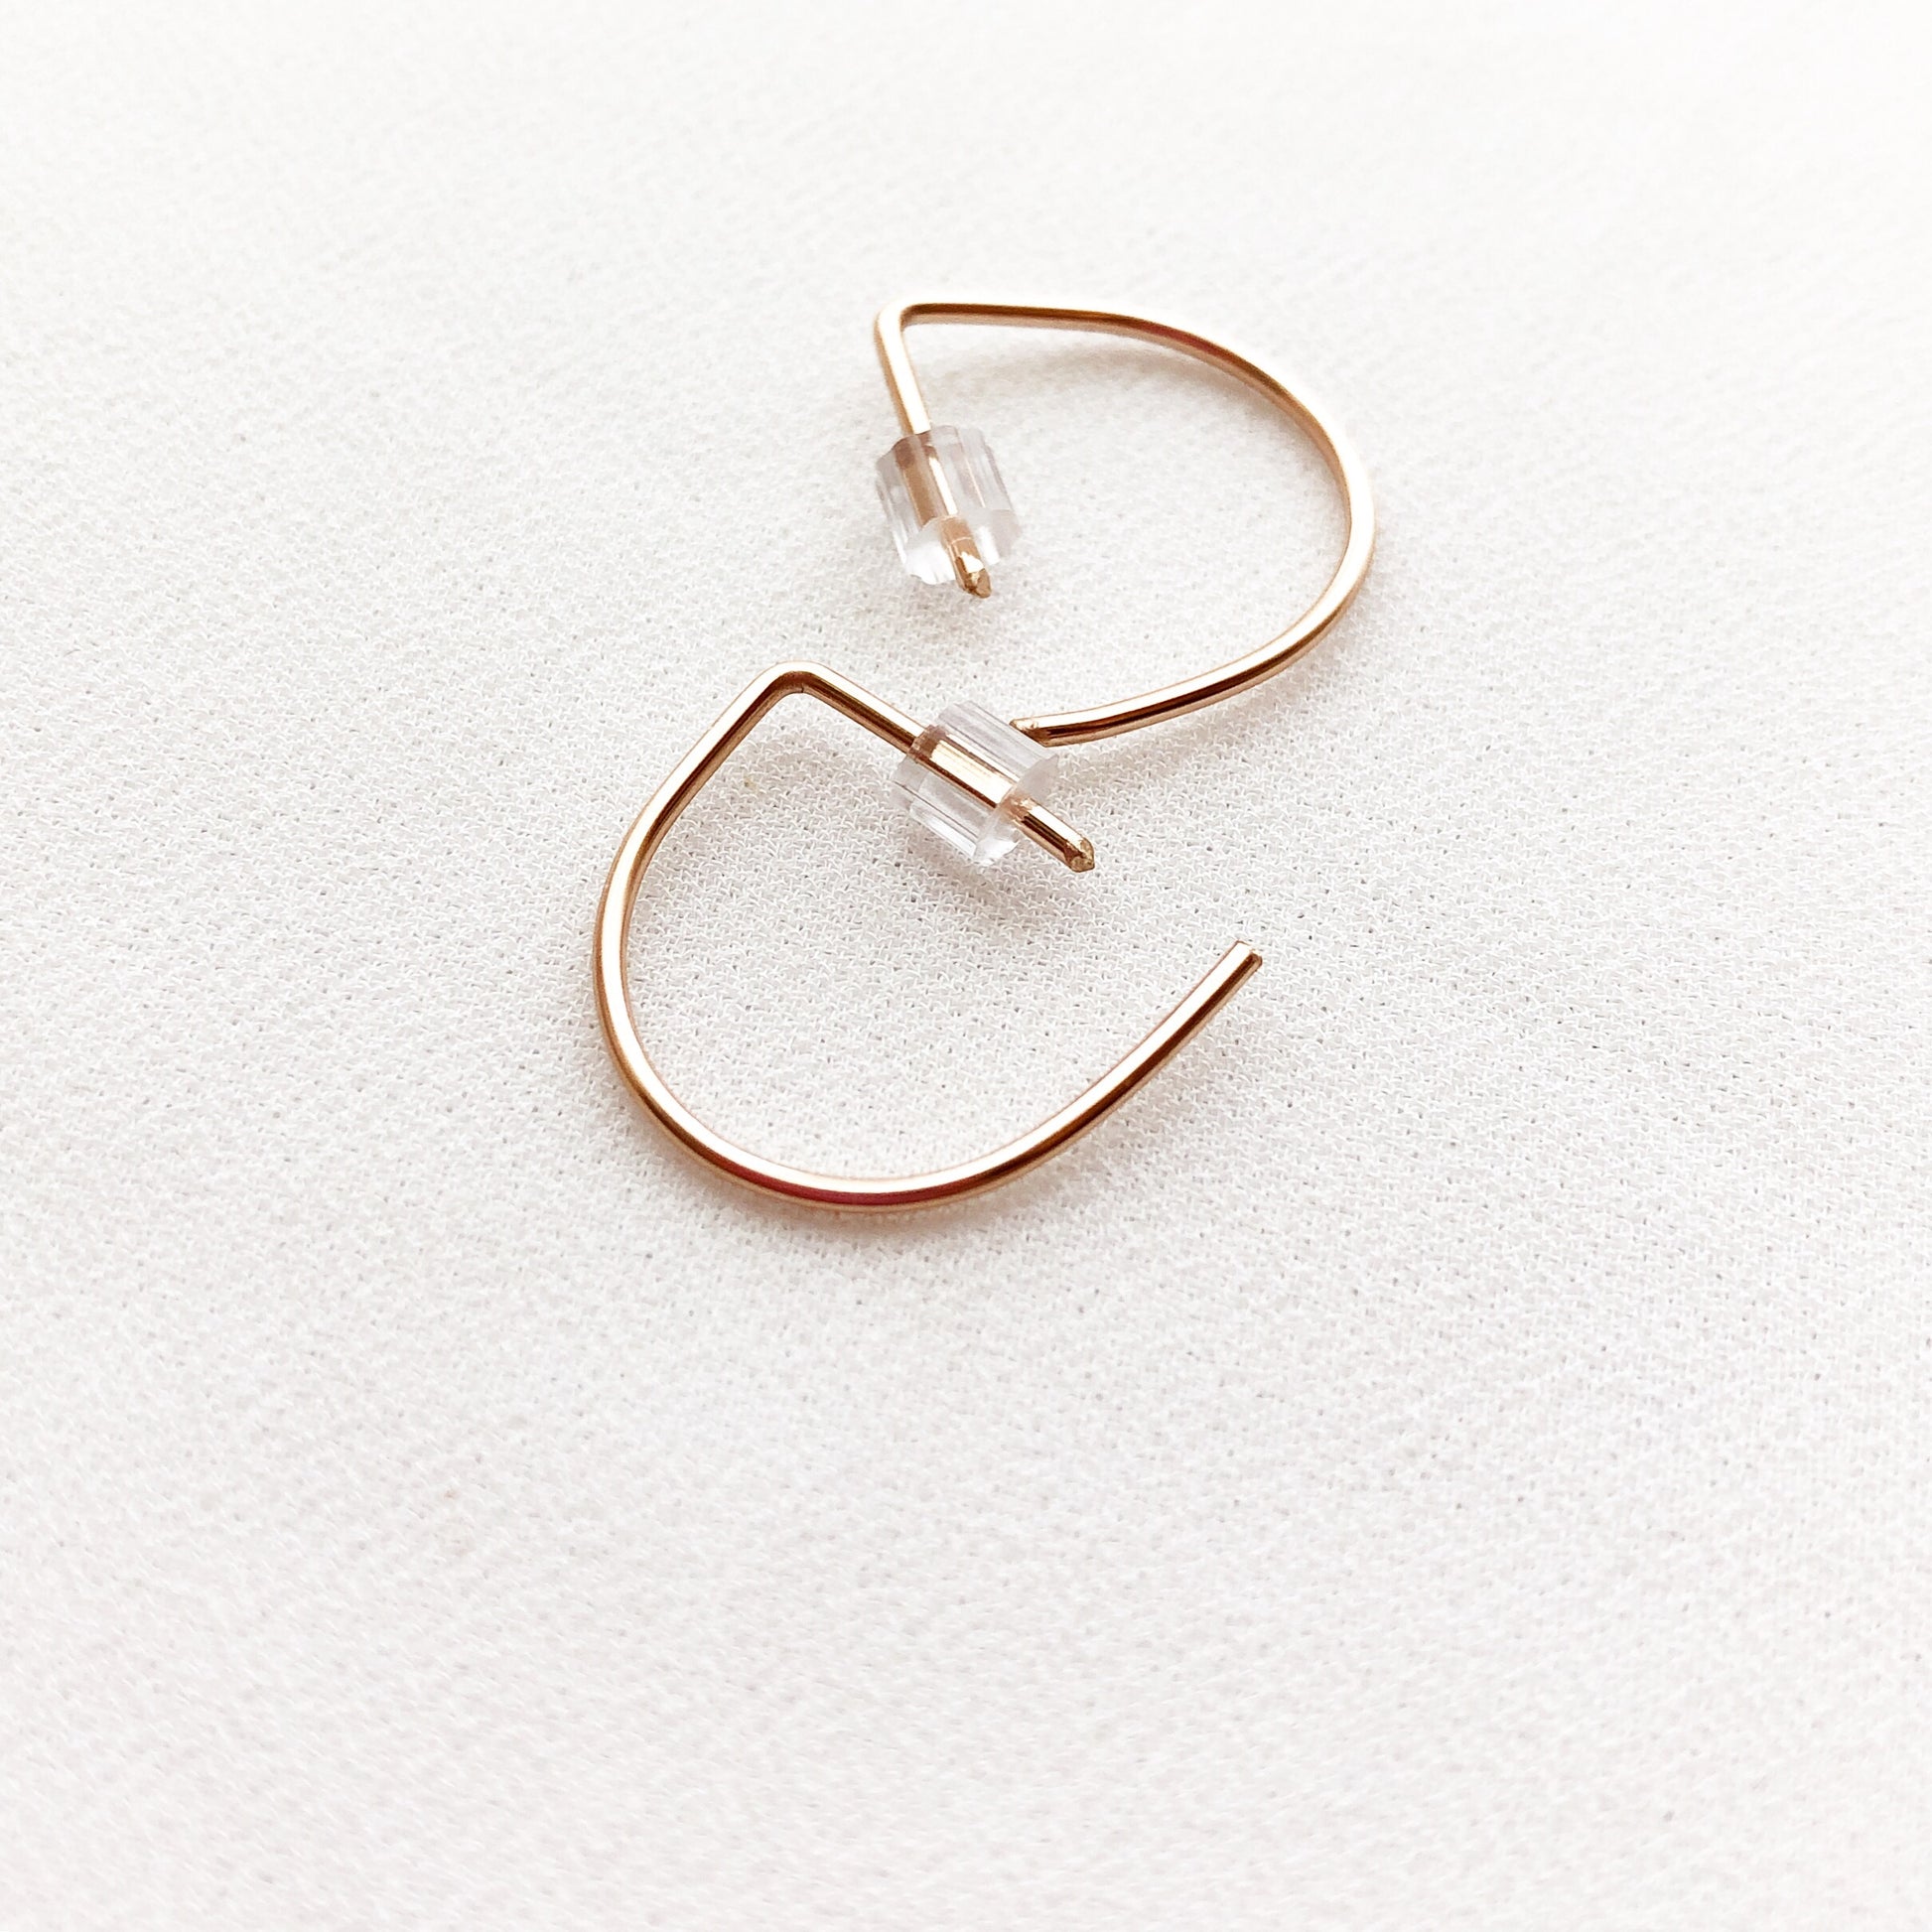 Semi Circle Stud Earrings - Small